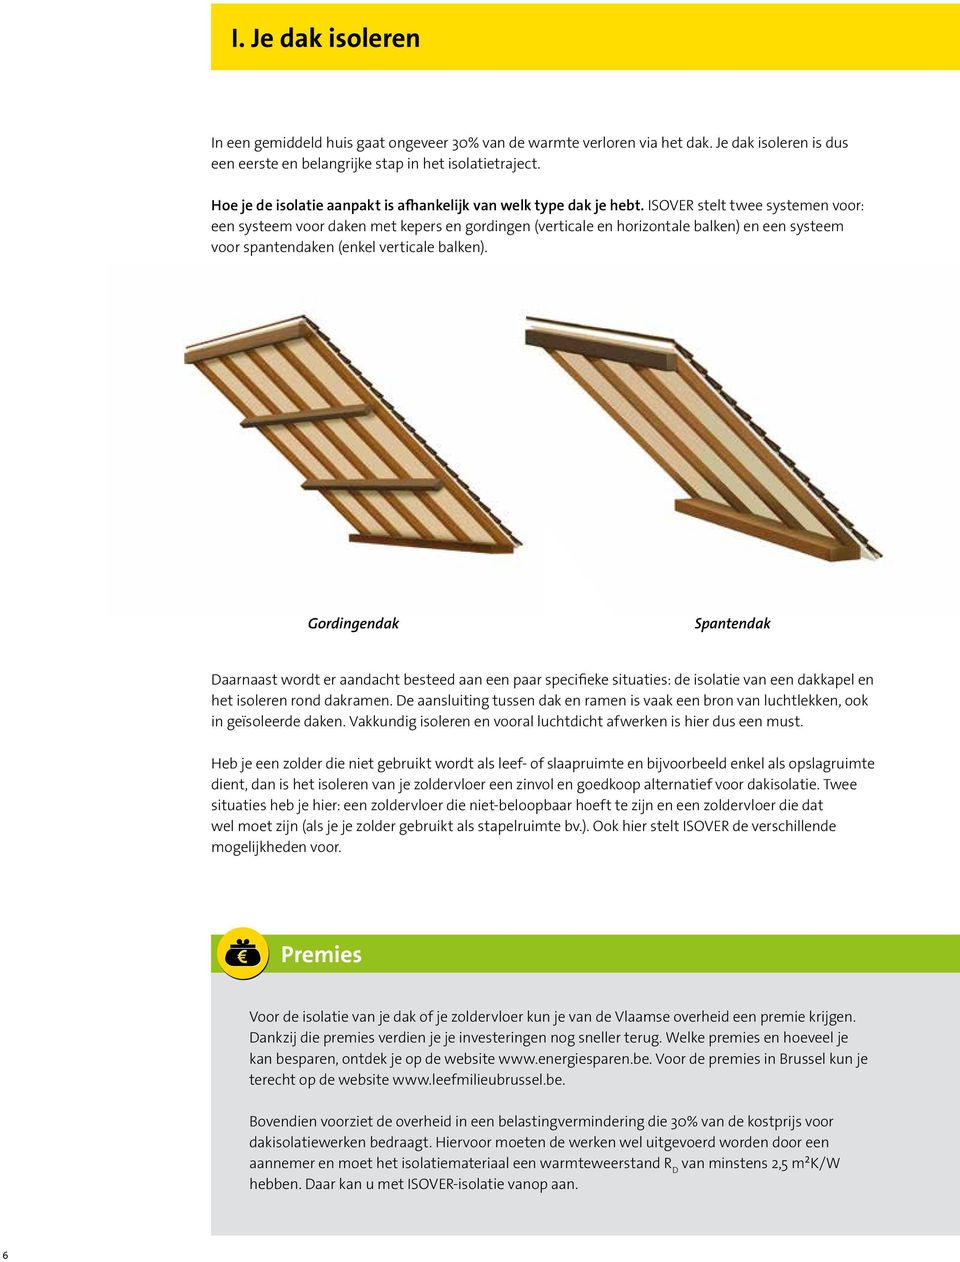 ISOVER stelt twee systemen voor: een systeem voor daken met kepers en gordingen (verticale en horizontale balken) en een systeem voor spantendaken (enkel verticale balken).